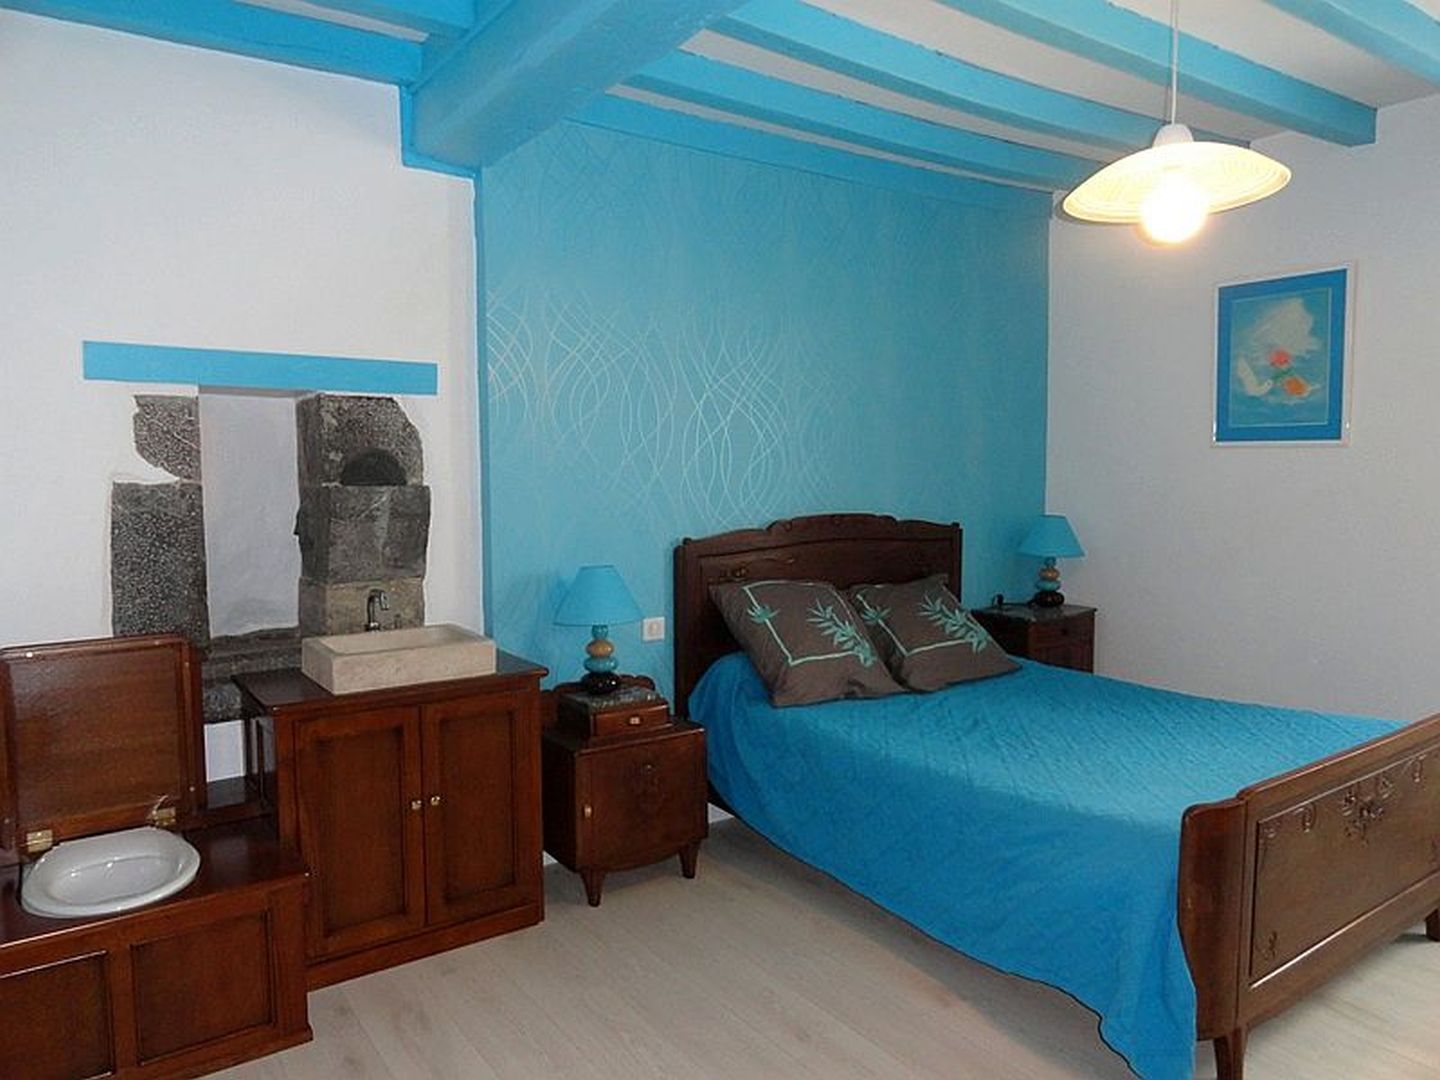 Location Loubet - Maison 10 pers - 11 - Chambre lit double bleu - Mendive 